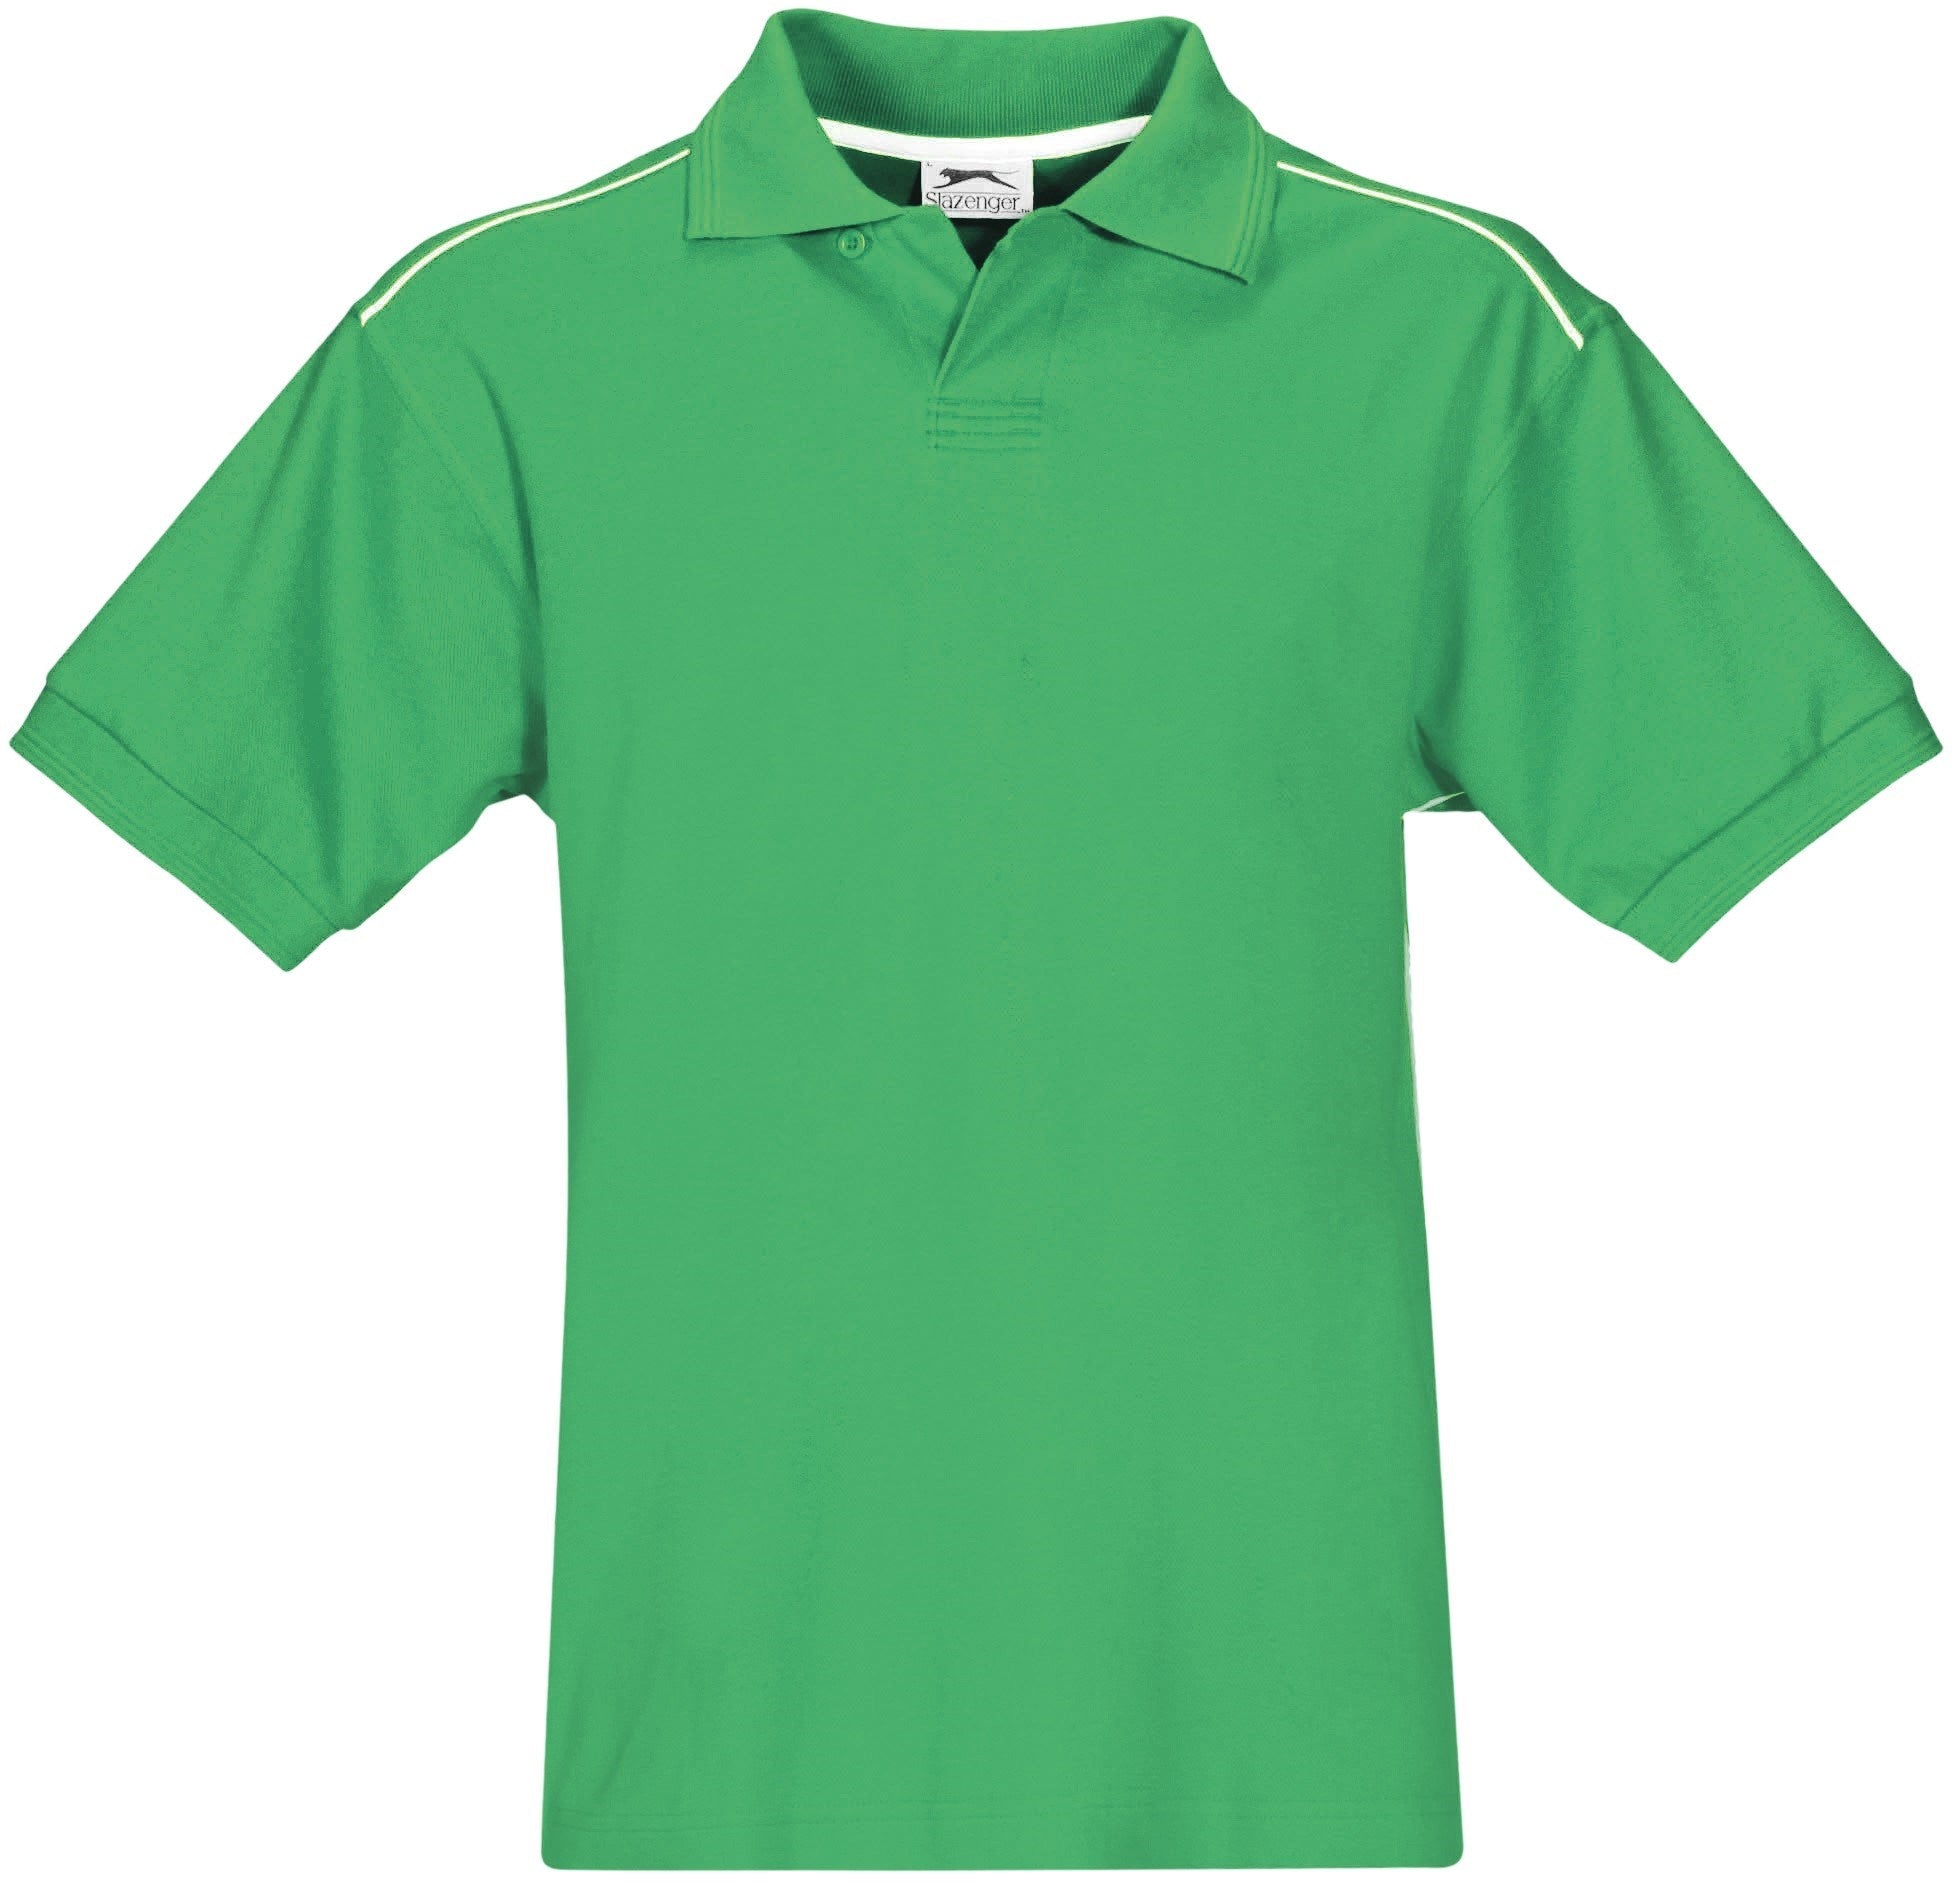 Mens Backhand Golf Shirt - Black Only-2XL-Green-G